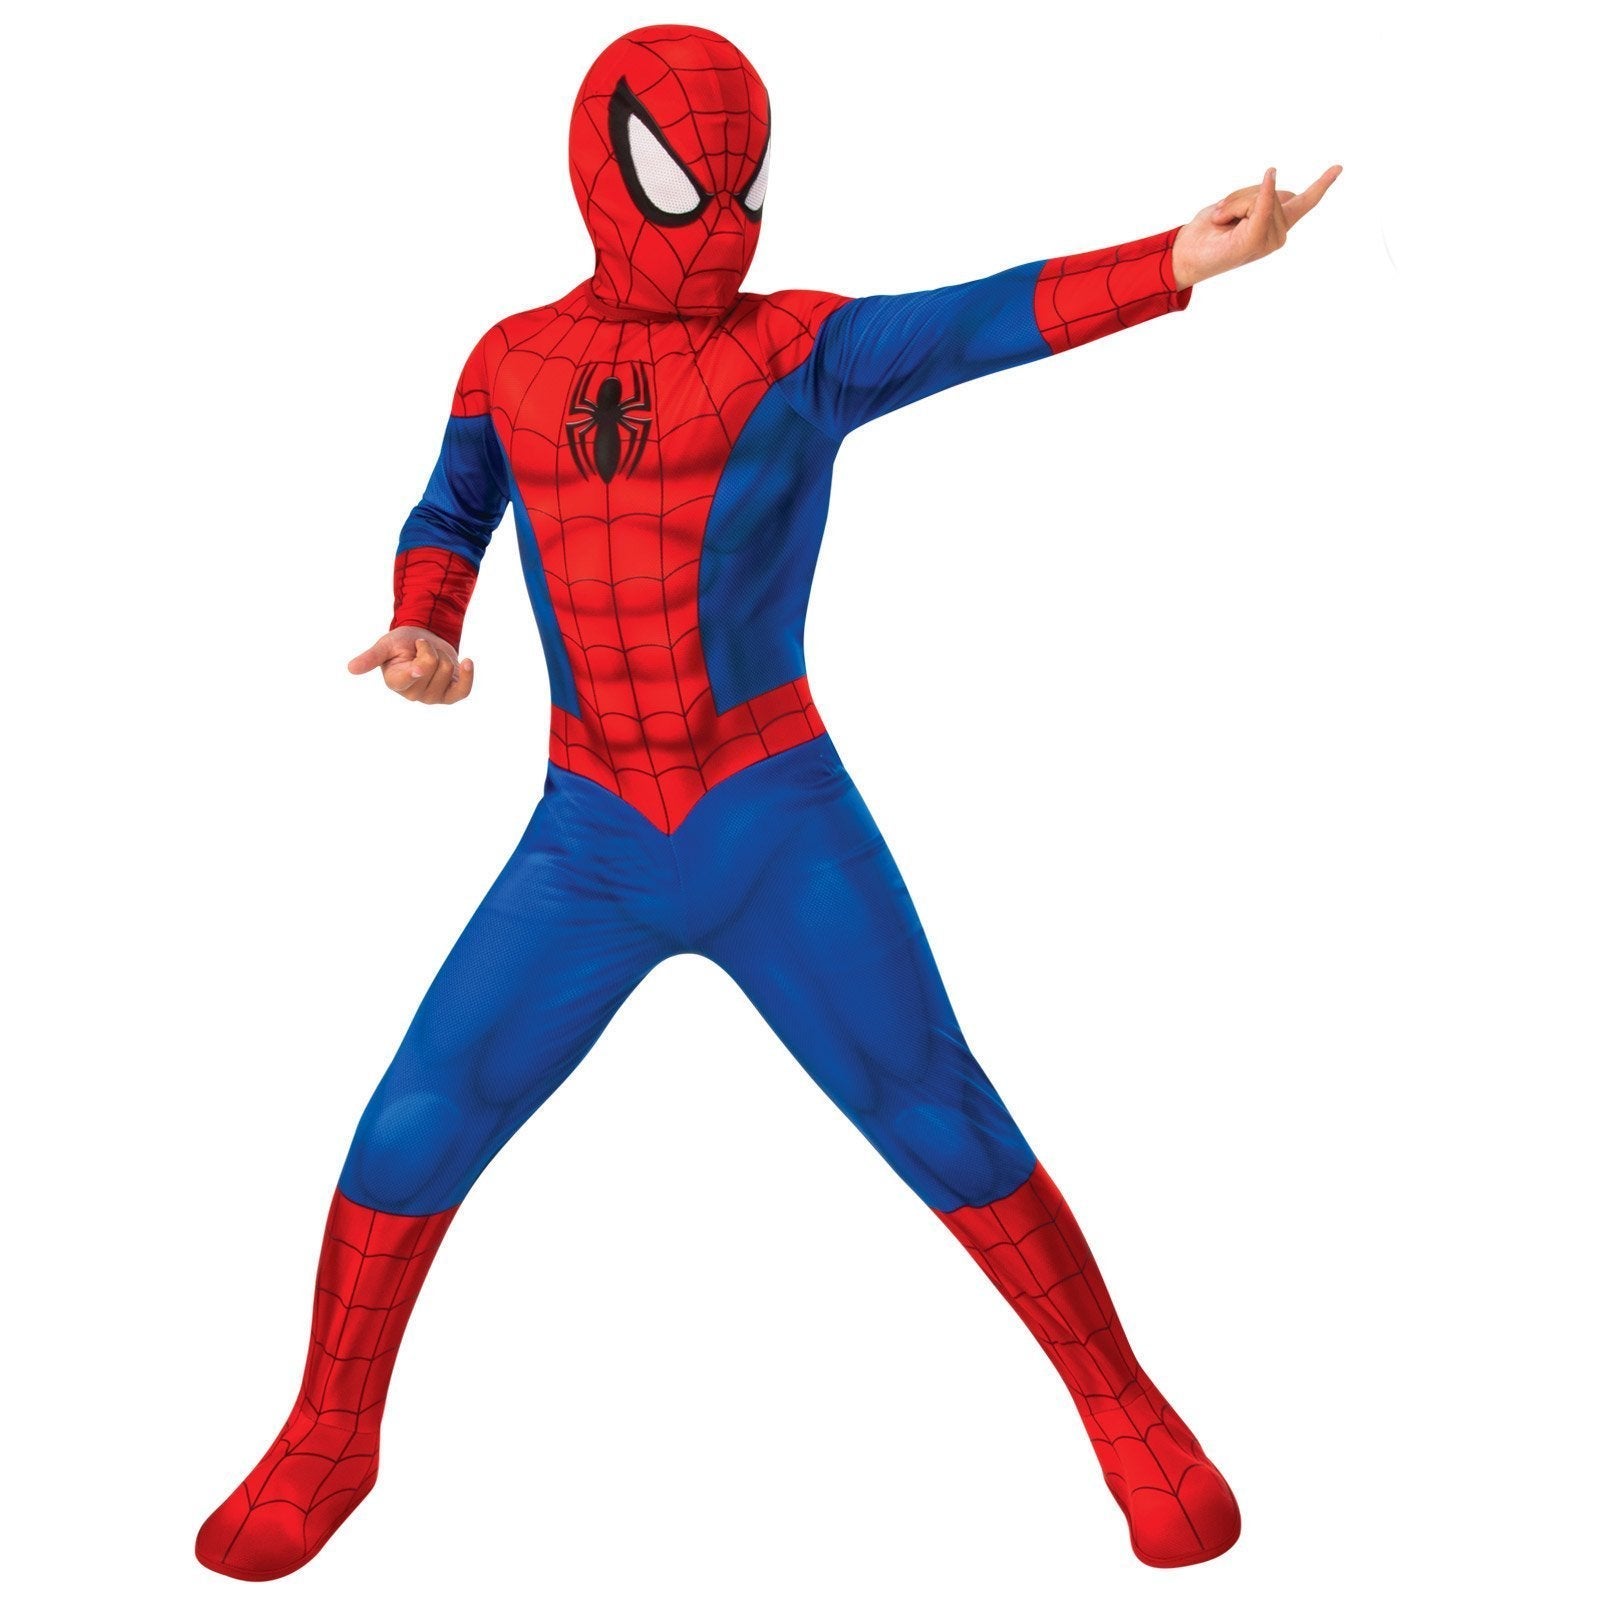 Spider-Man Costume for Kids & Tweens - Marvel Spider-Man